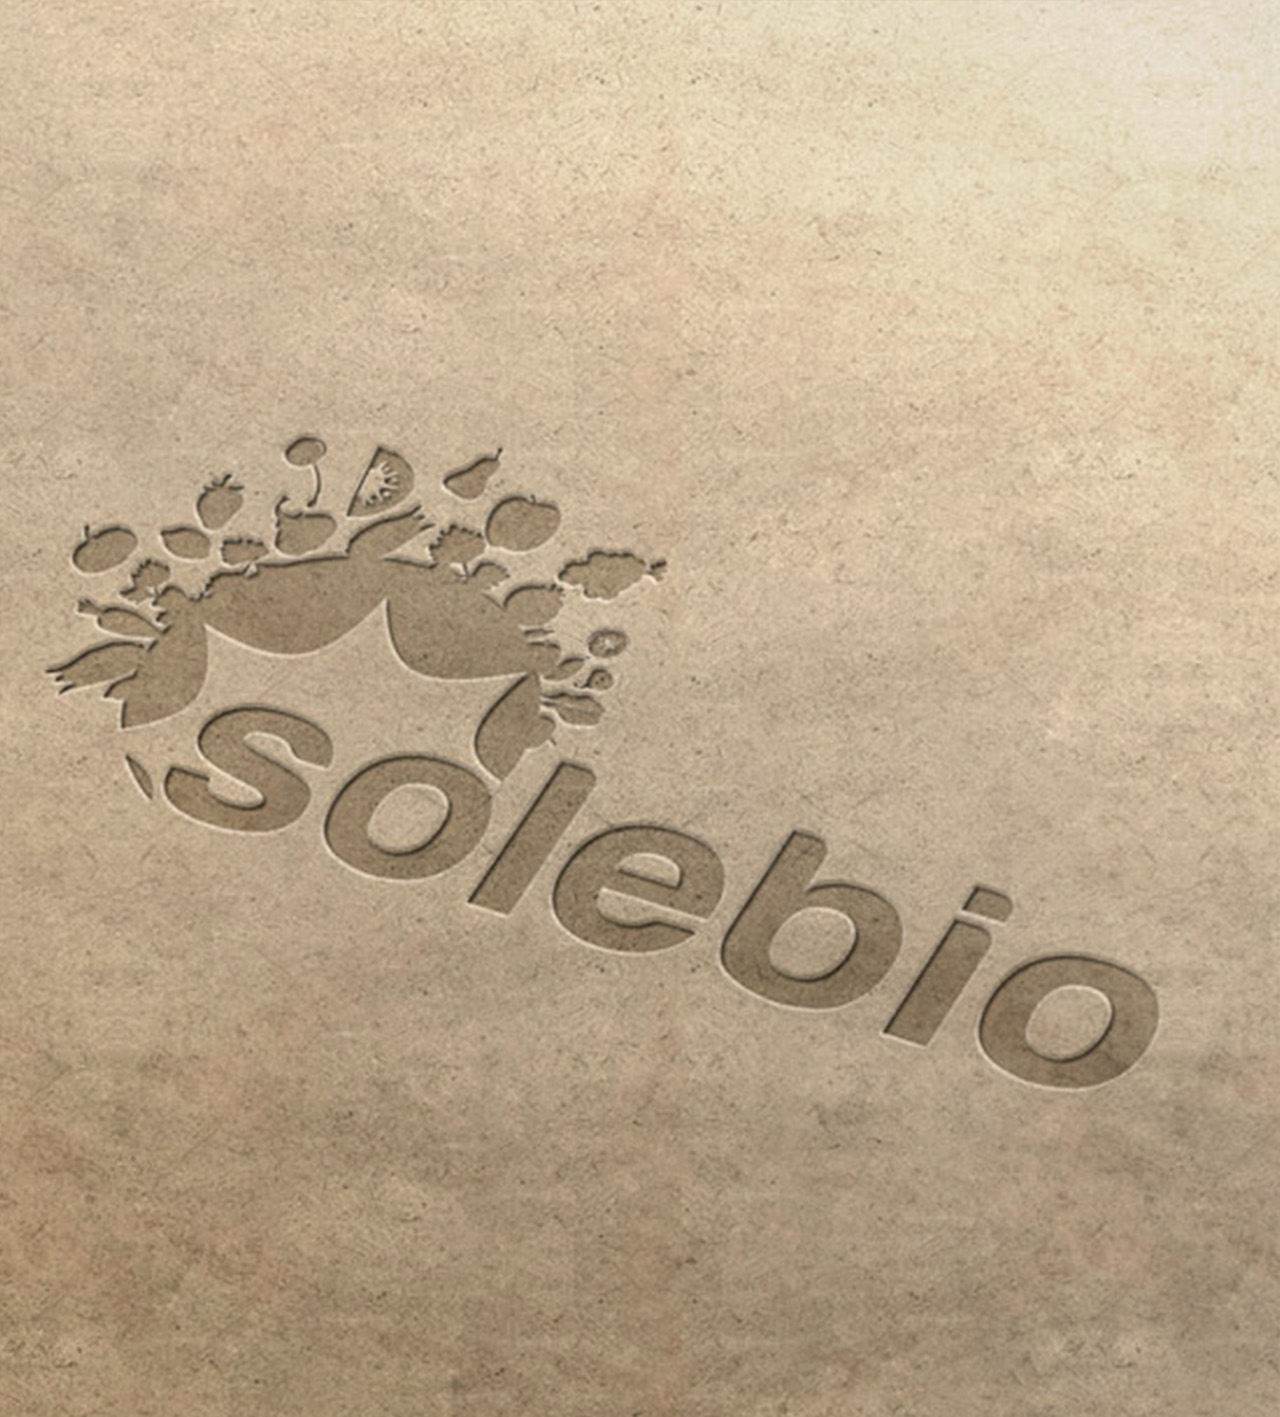 love-my-name-solebio-logo-gard